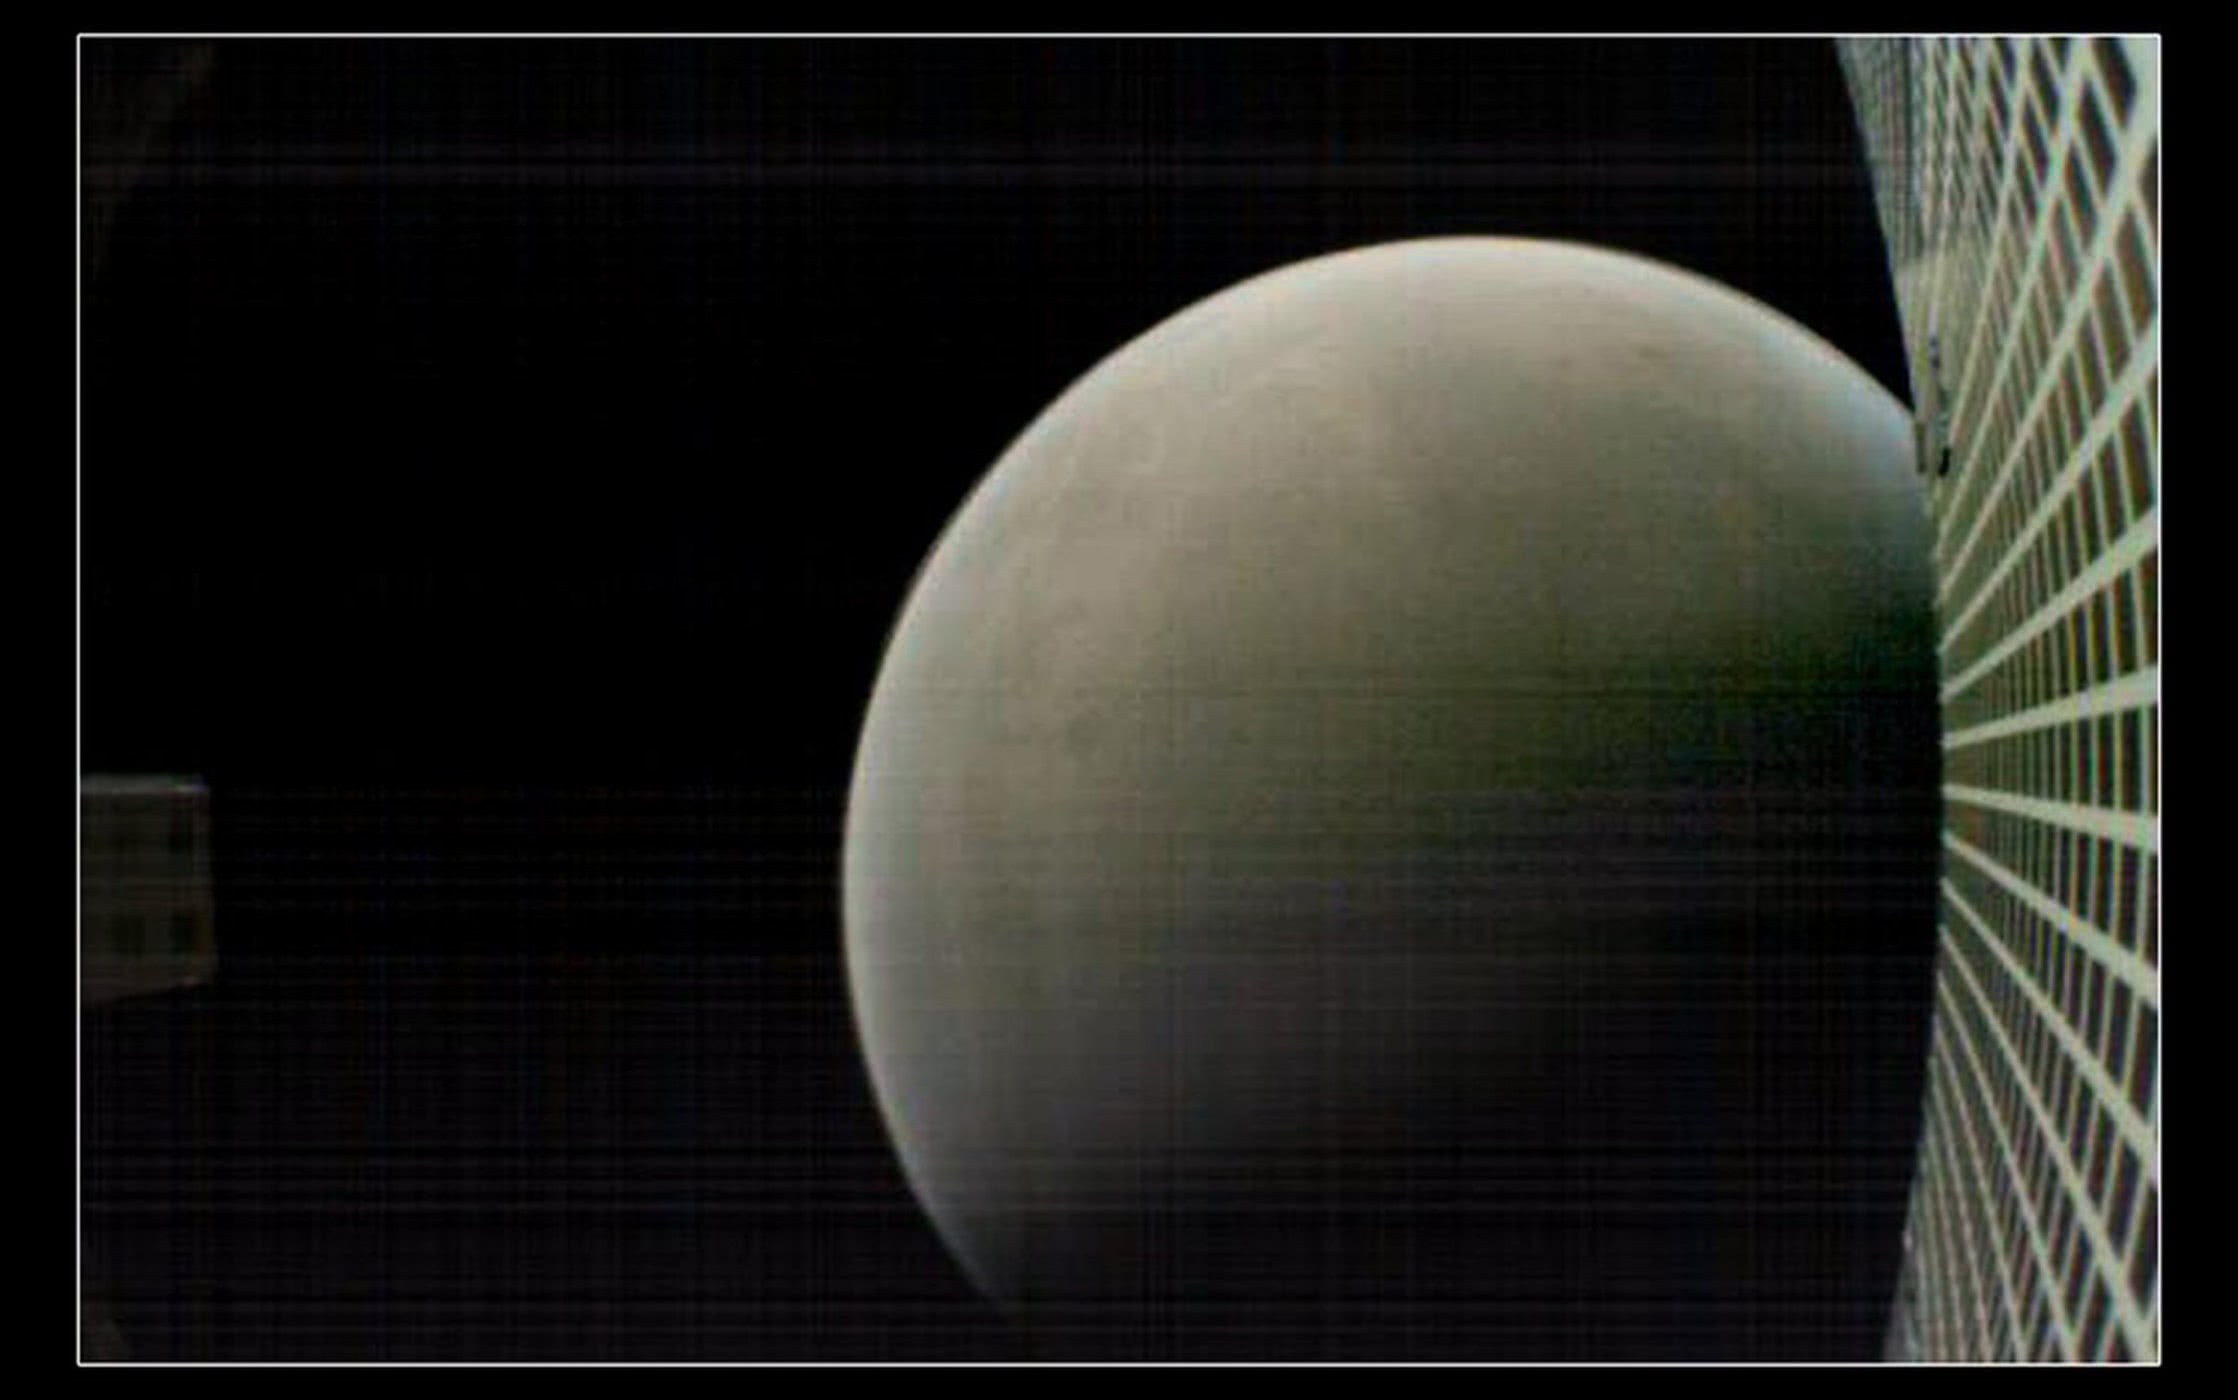 NASA'nın Mars'a gönderdiği küp uydulardan 1 aydır haber alınamıyor